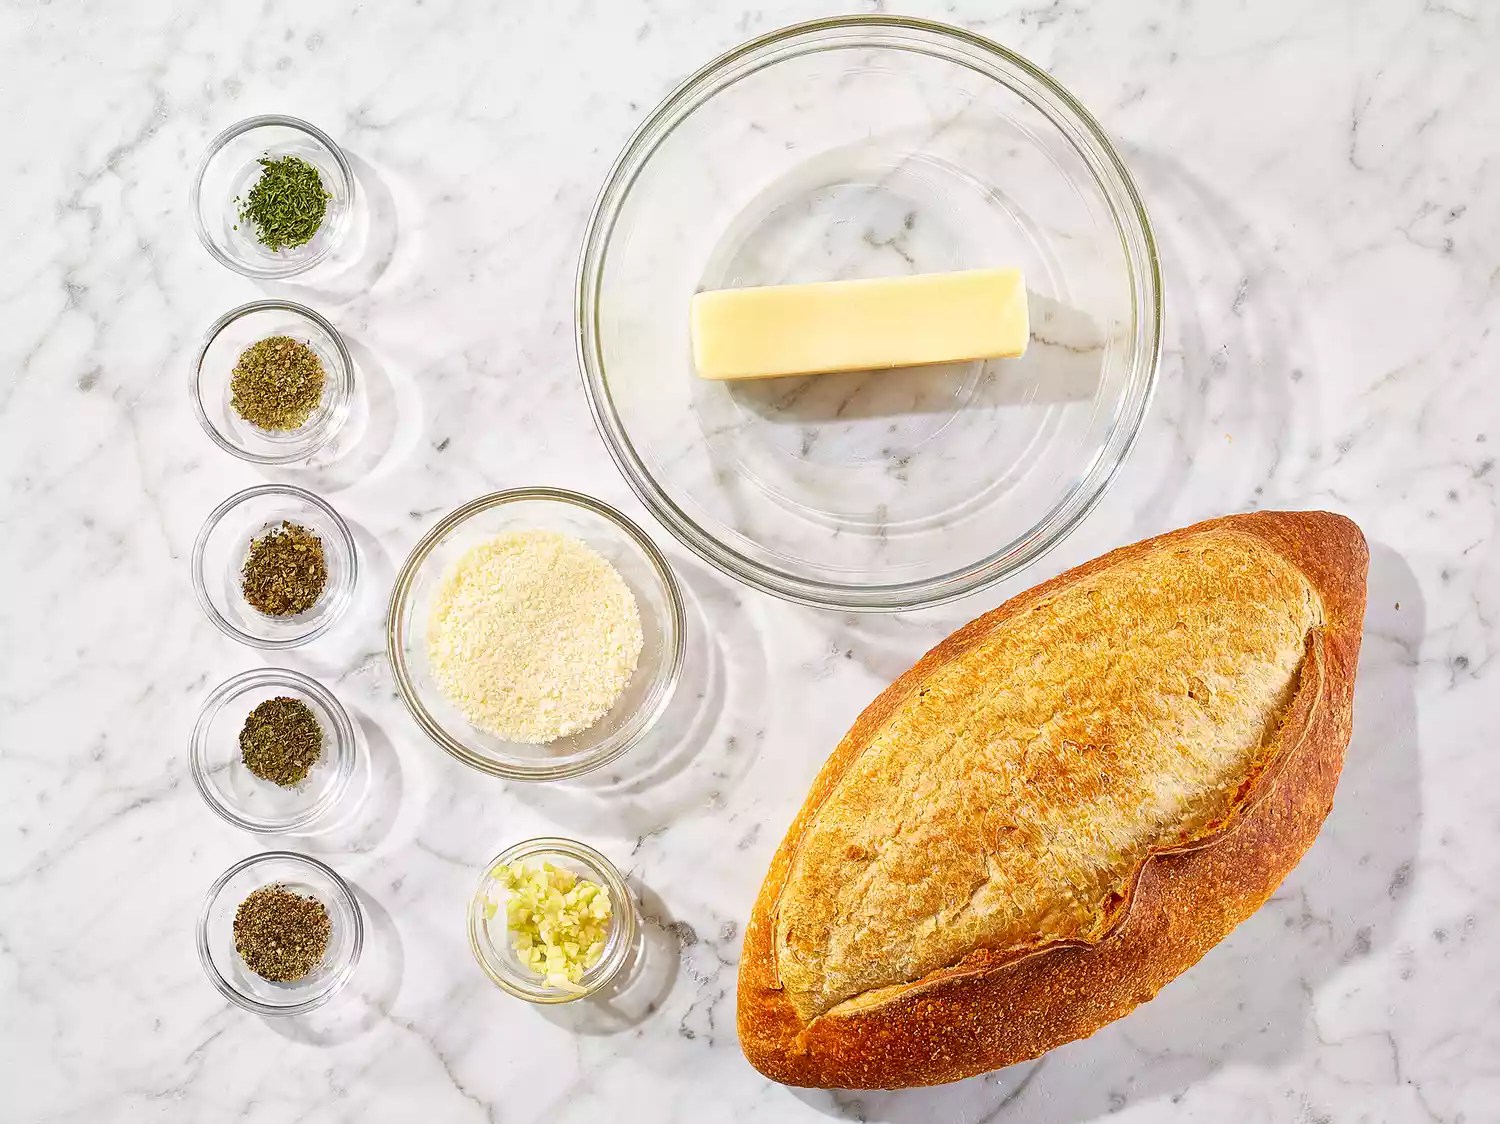 The Ultimate Garlic Bread Spread – Irresistible Flavor!